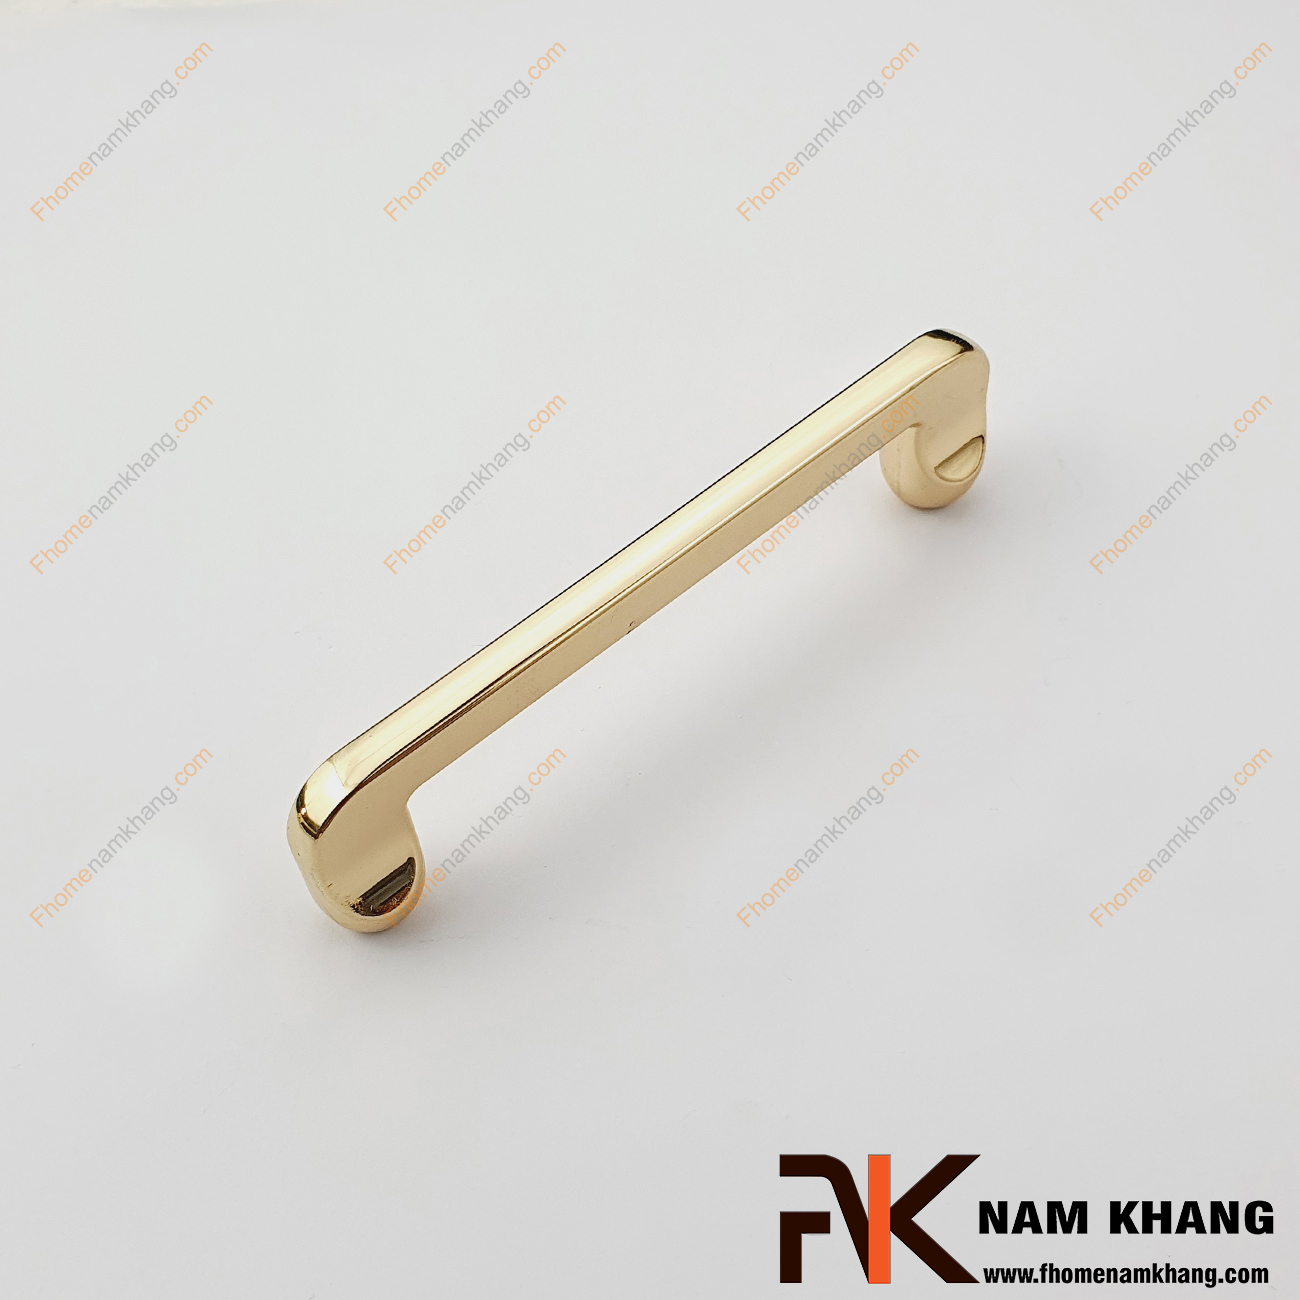 Tay nắm cửa tủ bếp vàng bóng NK400L-V Với chất liệu hợp kim bền đẹp, sản phẩm được mạ lớp vàng sáng bóng tạo nên sản phẩm chất lượng và cao cấp.